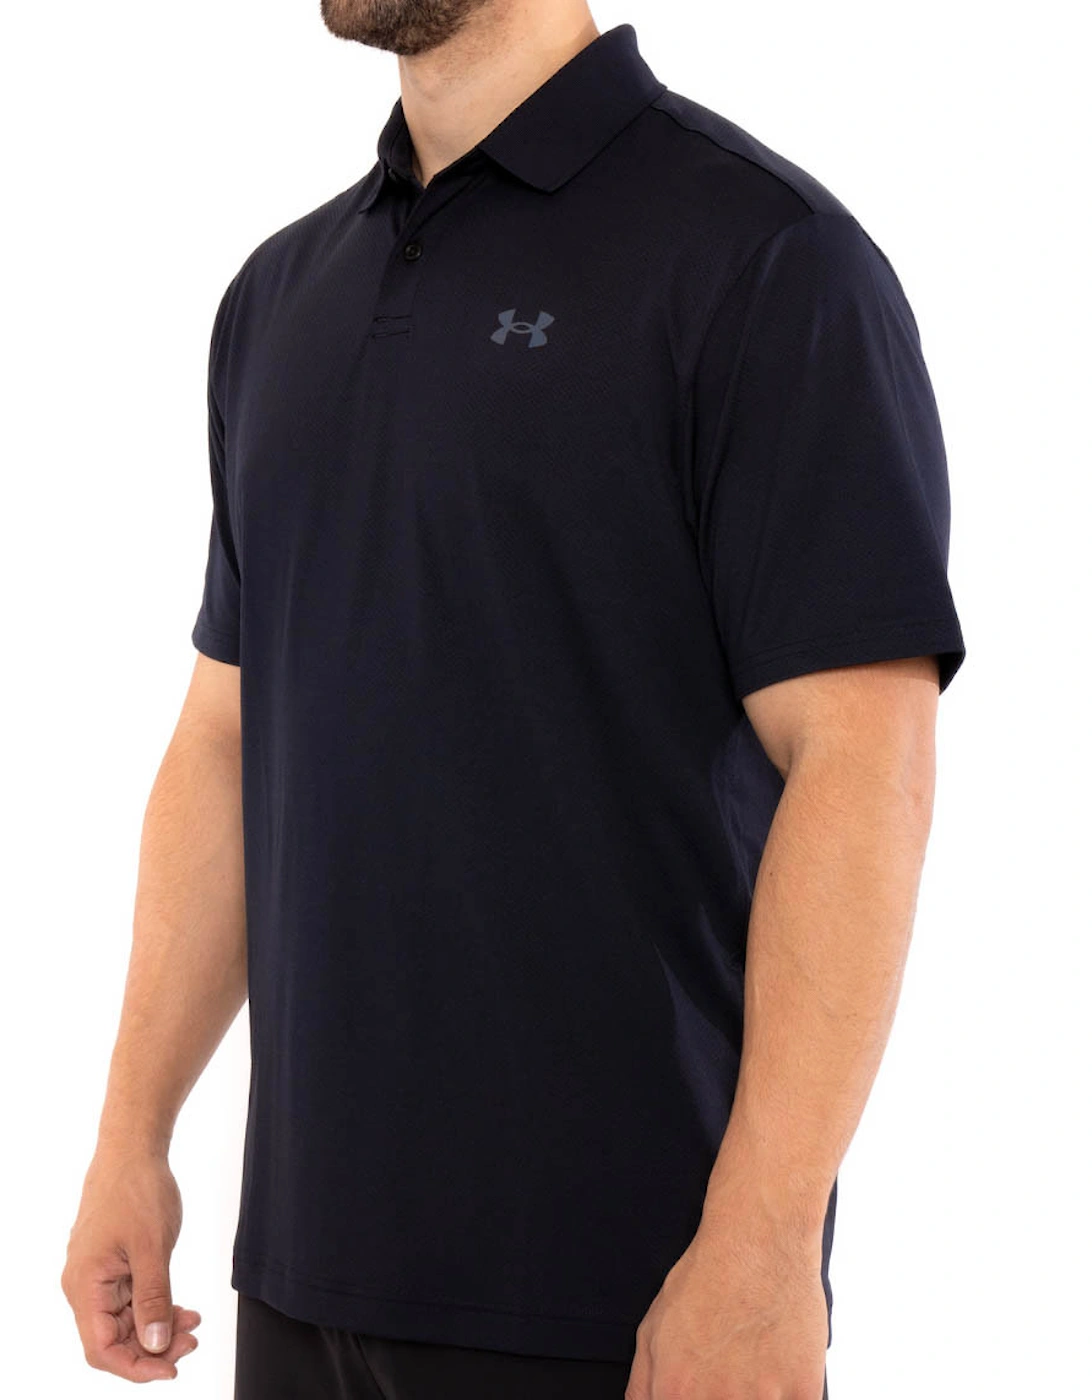 Mens Performance 2.0 Polo Shirt (Black)